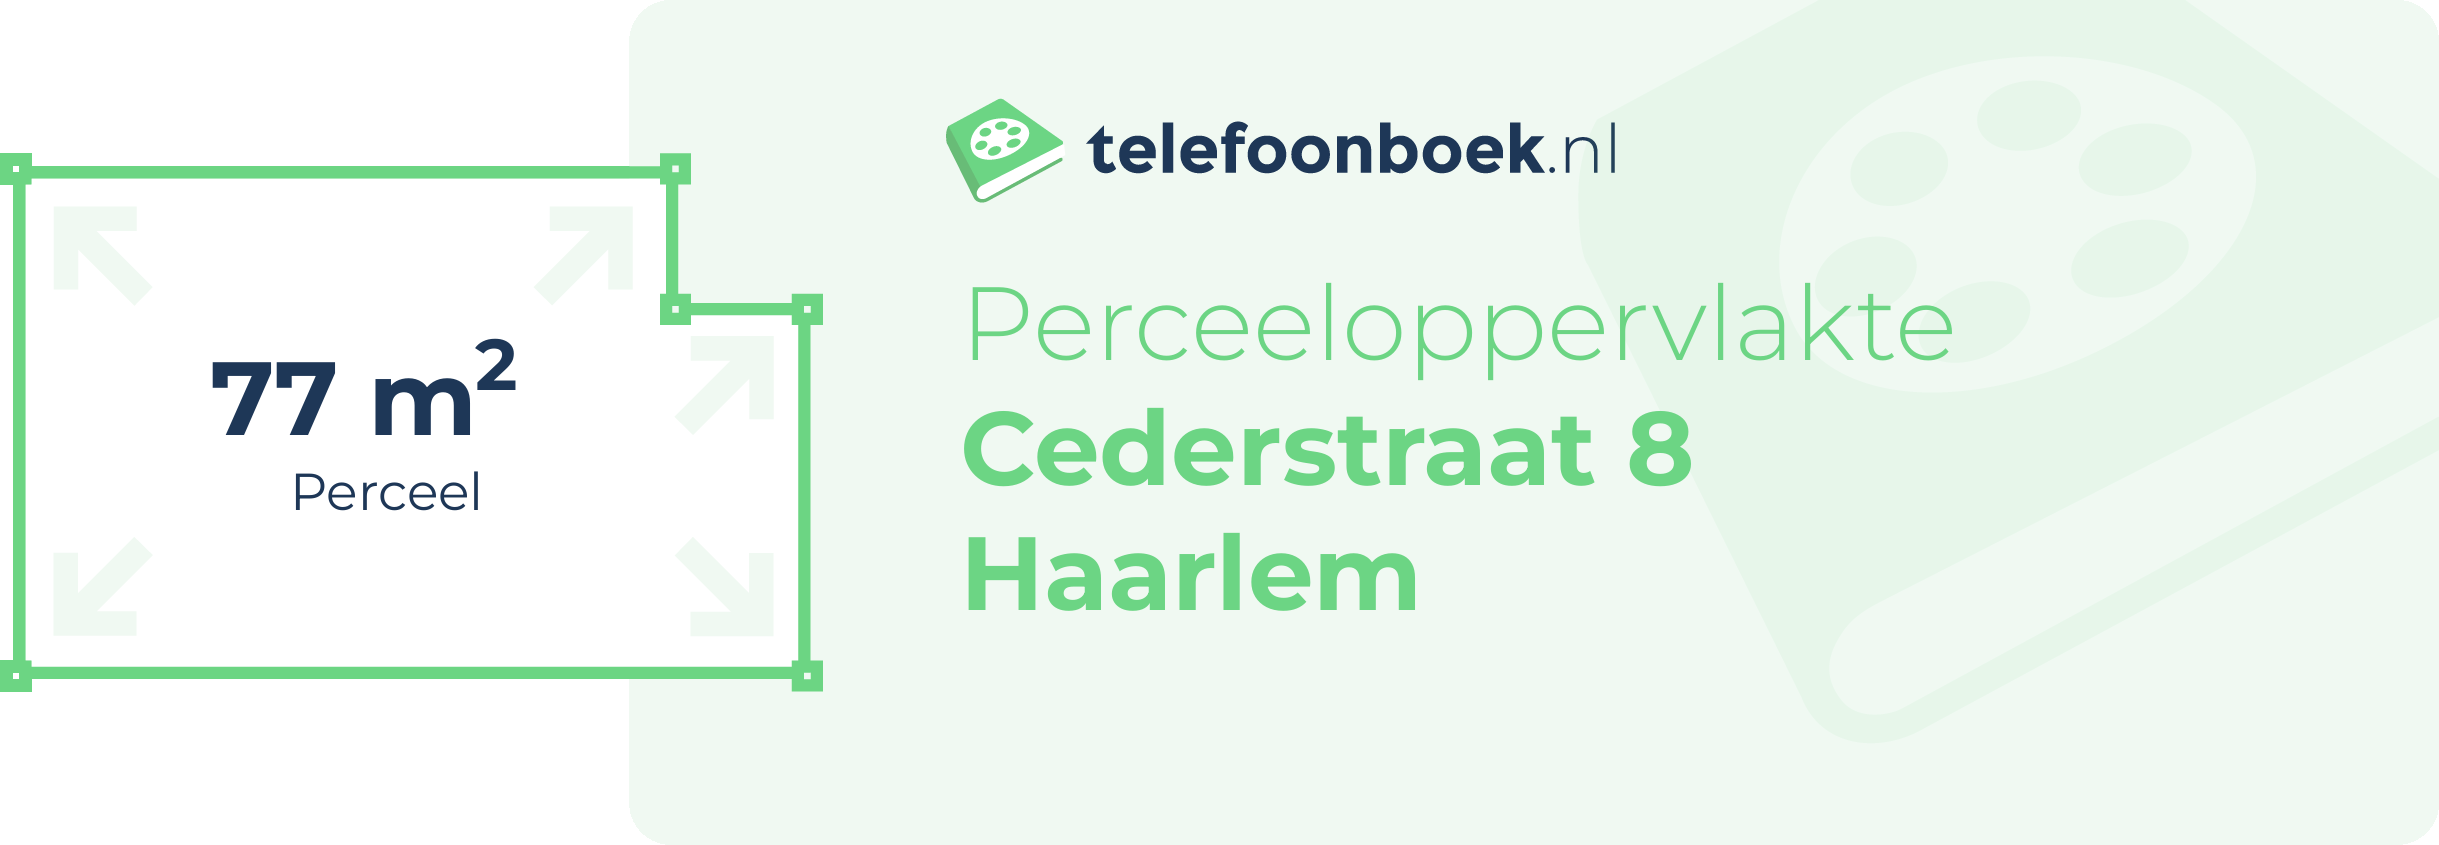 Perceeloppervlakte Cederstraat 8 Haarlem